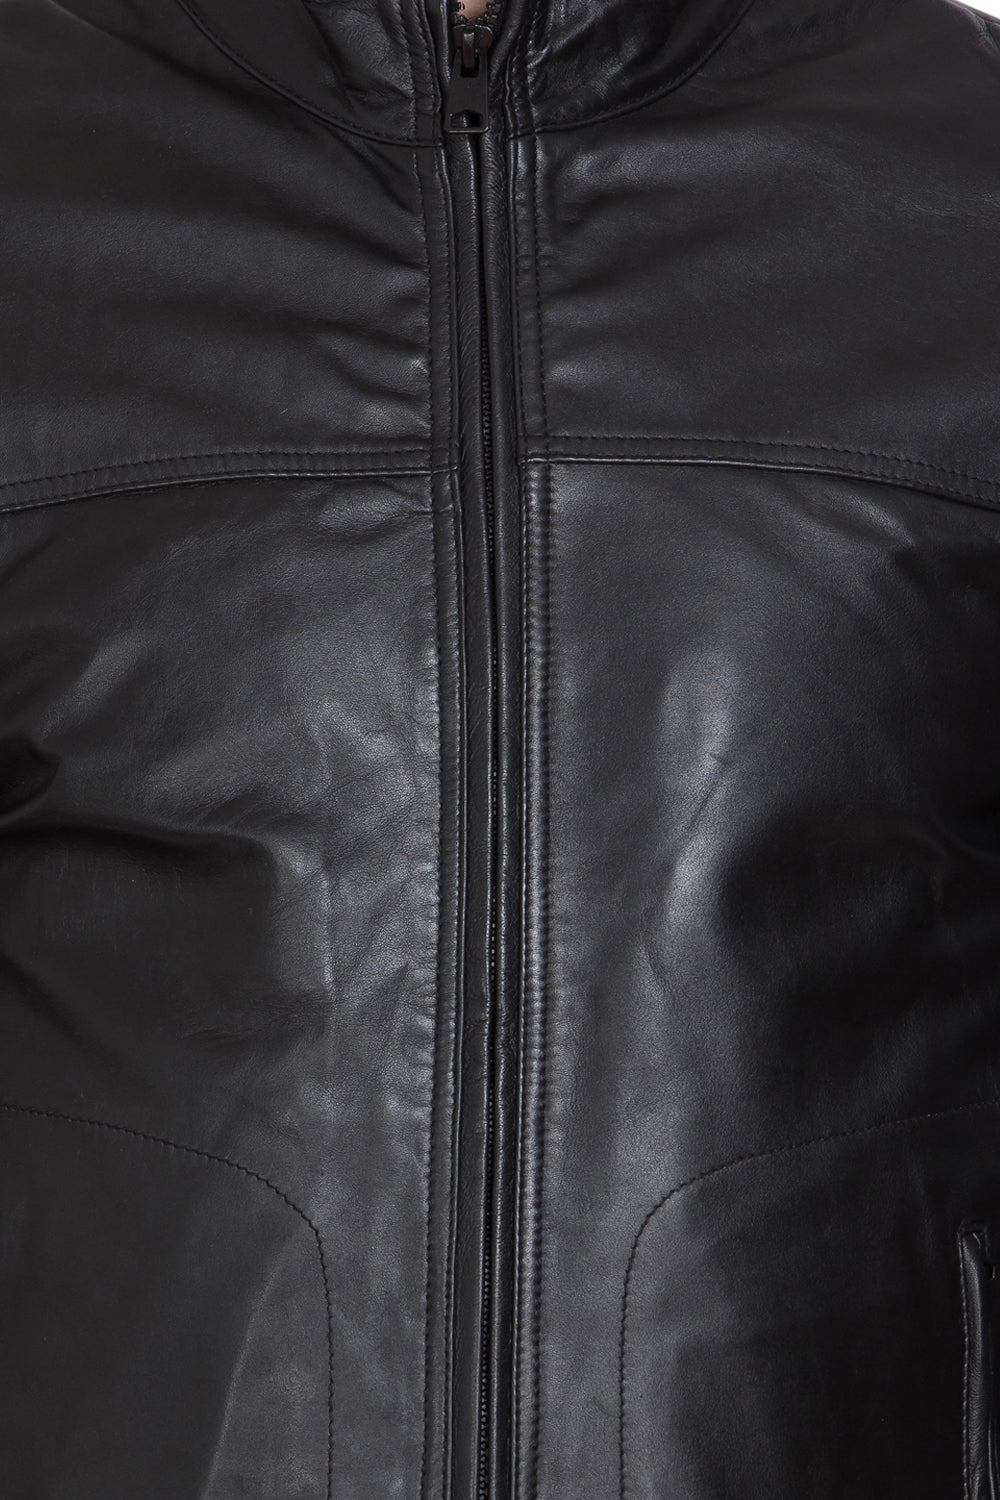 Justanned Jet Black High Neck Leather Jacket